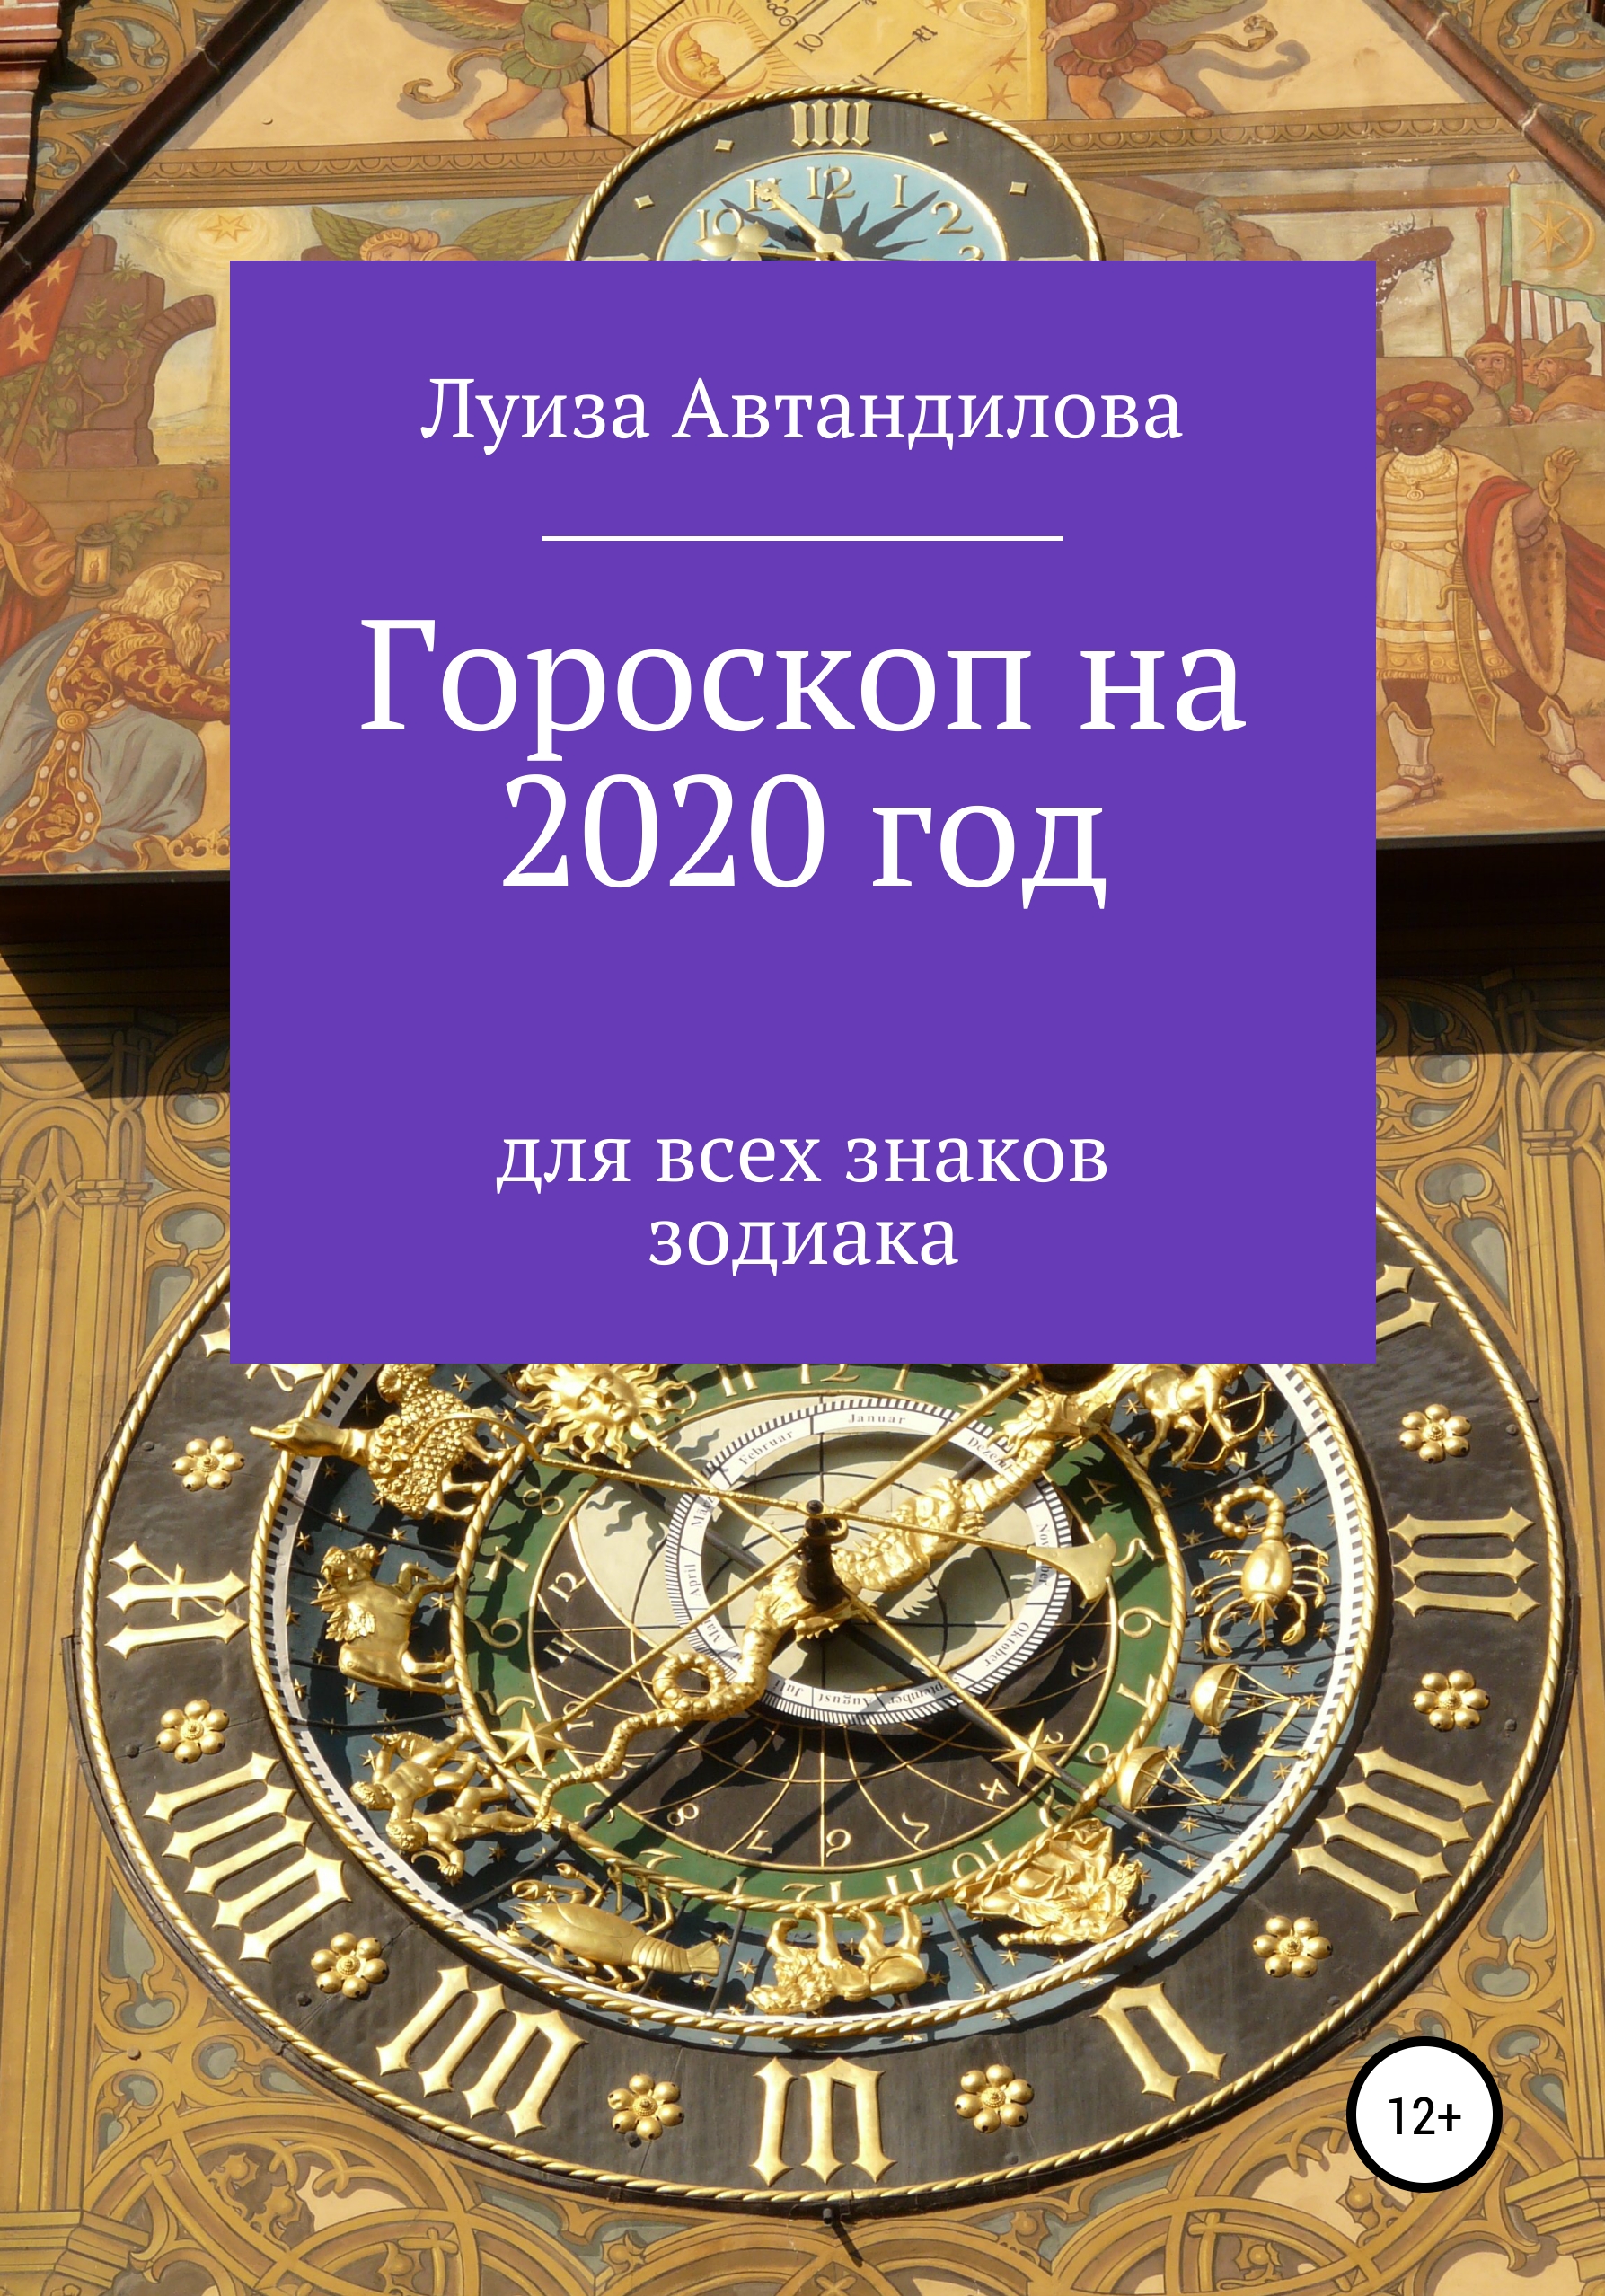 Скачать Гороскоп на 2020 год для всех знаков зодиака - Луиза Юрьевна Автандилова